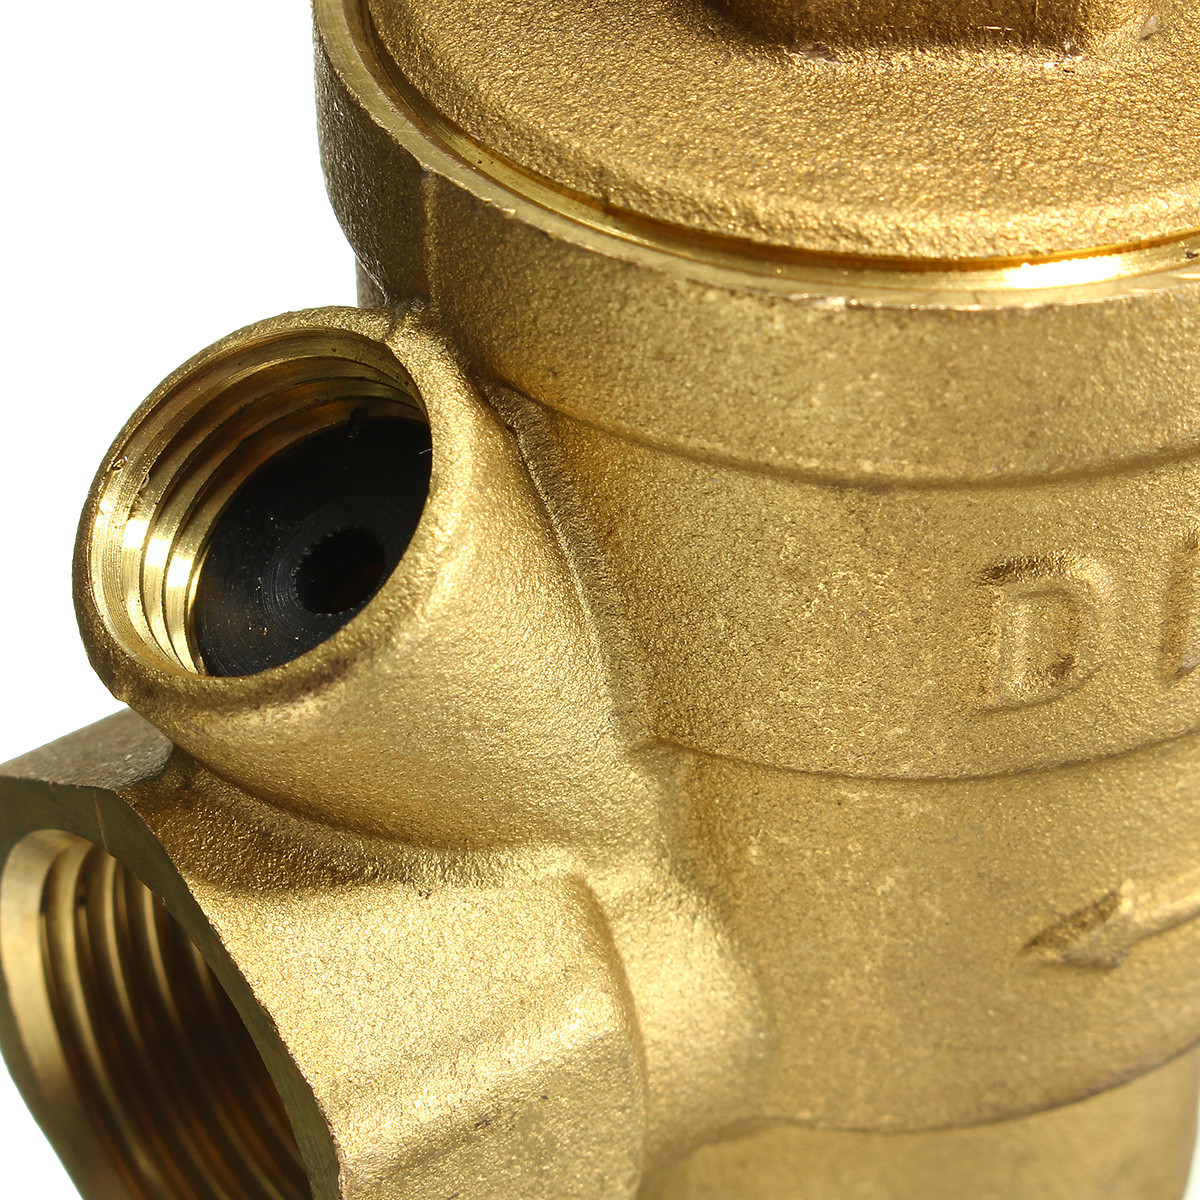 Adjustable-DN15-Bspp-Brass-Water-Pressure-Reducing-Valve-with-Gauge-Flow-1104771-8